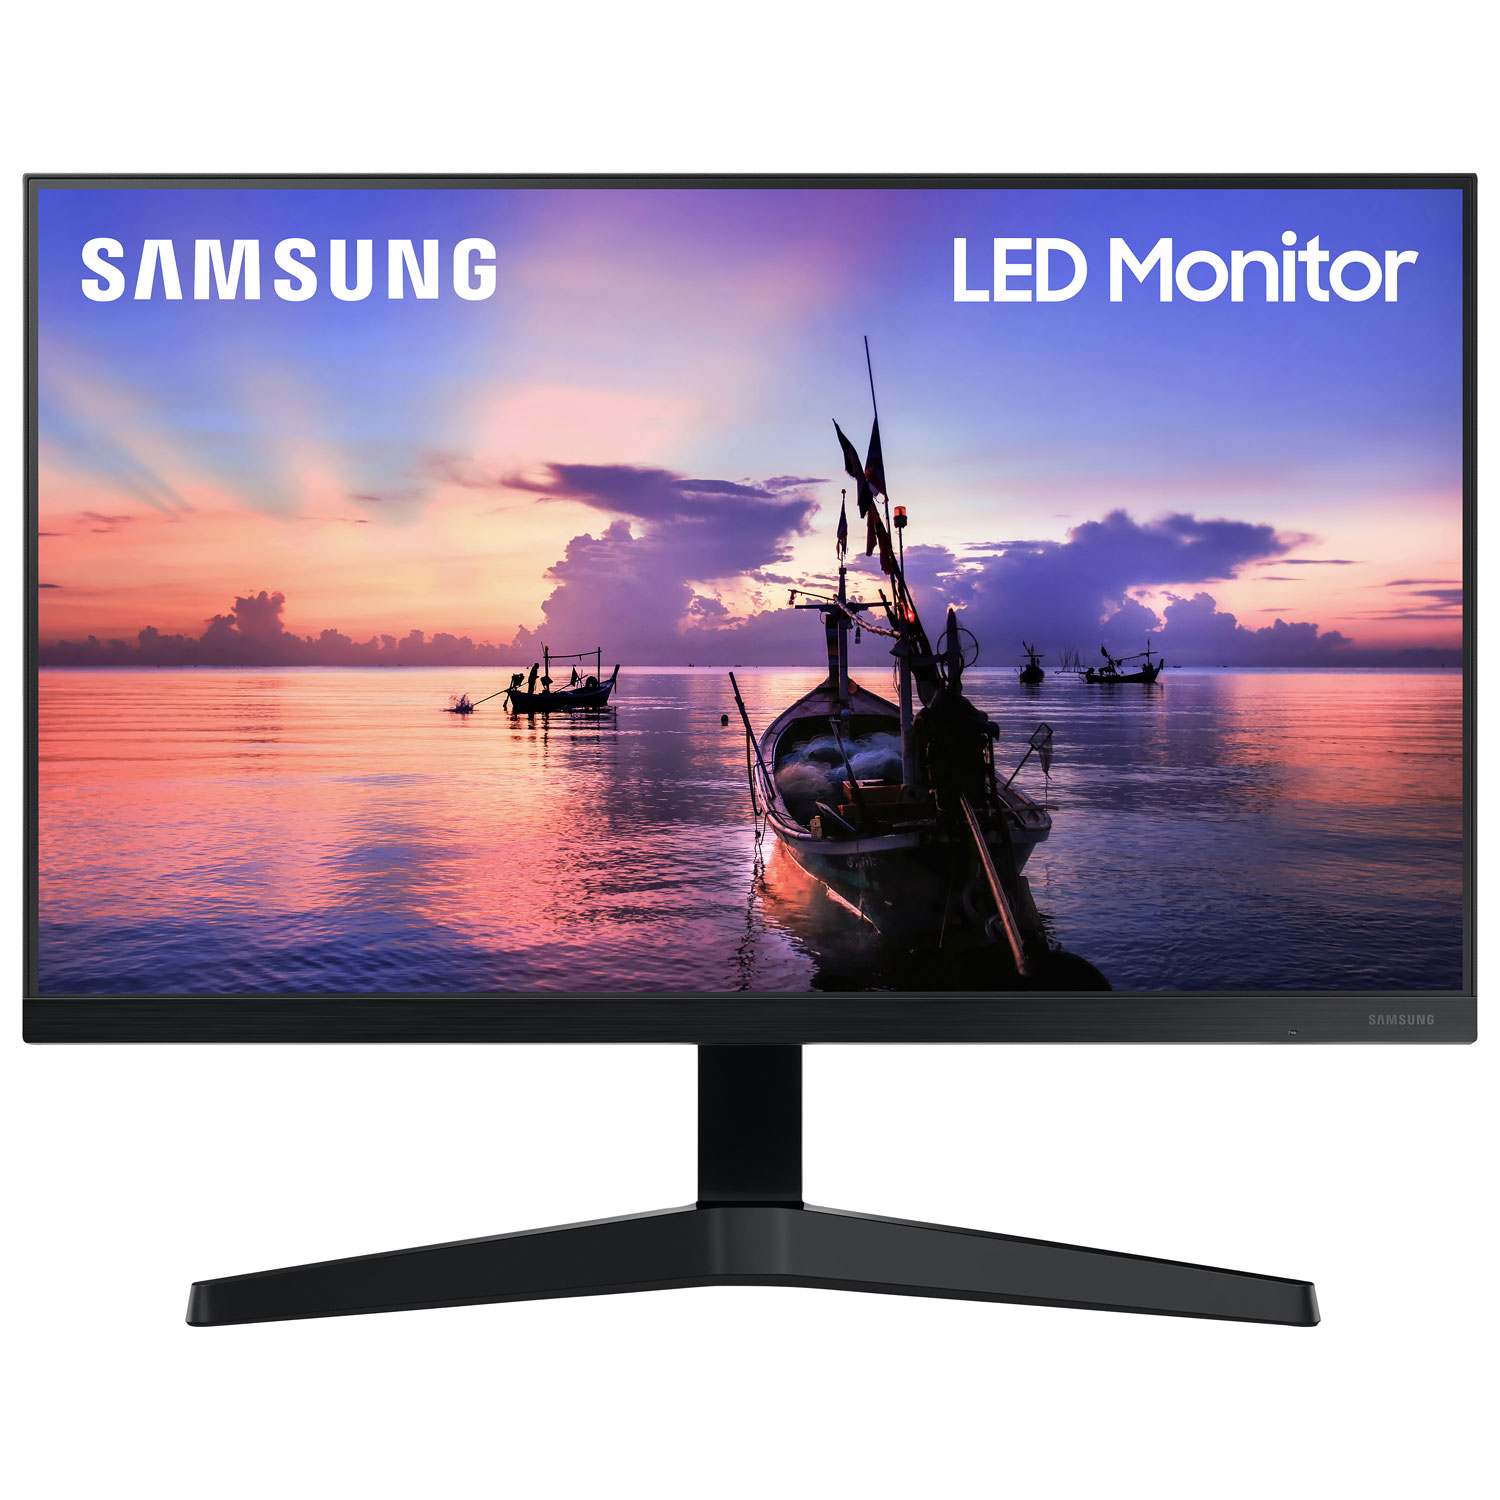 Samsung 24" FHD 75Hz 5ms GTG IPS LED FreeSync Monitor (LF24T350FHNXZA) - Dark Blue Grey